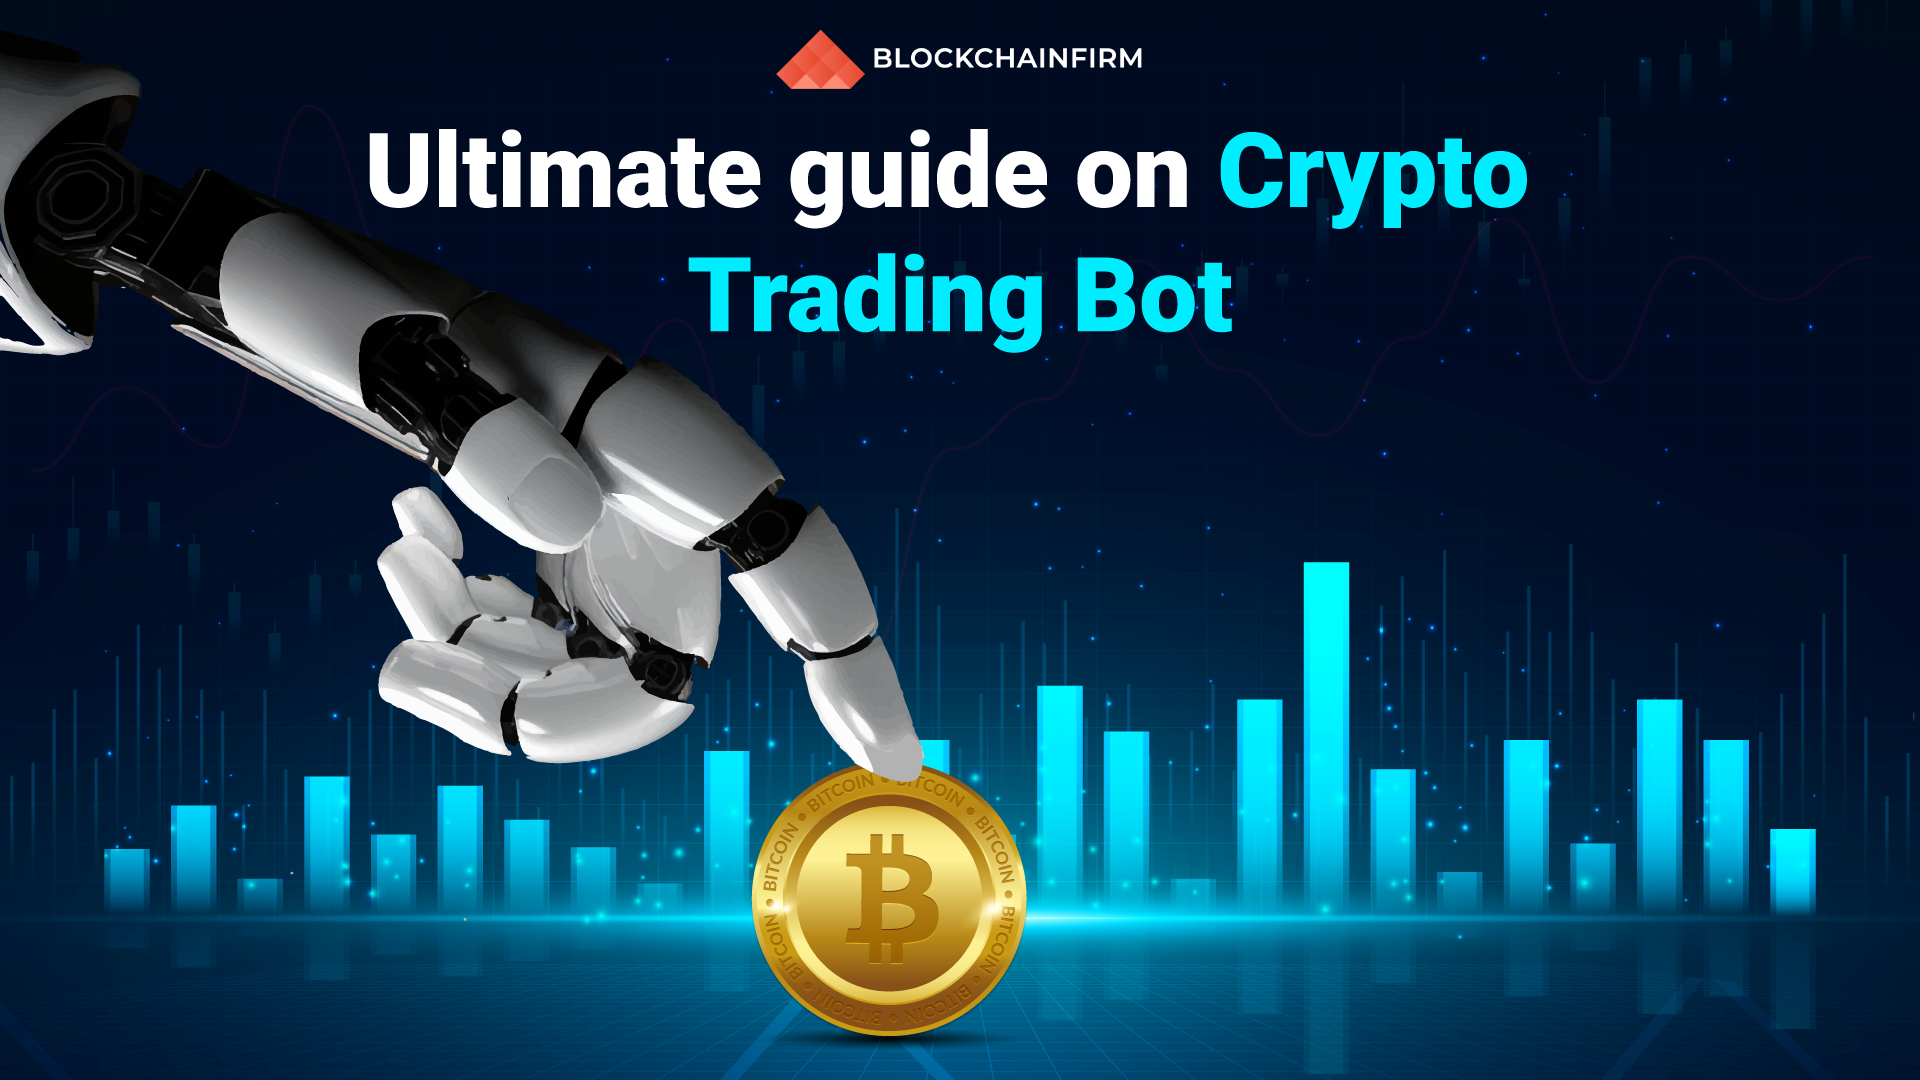 crypto trading bots